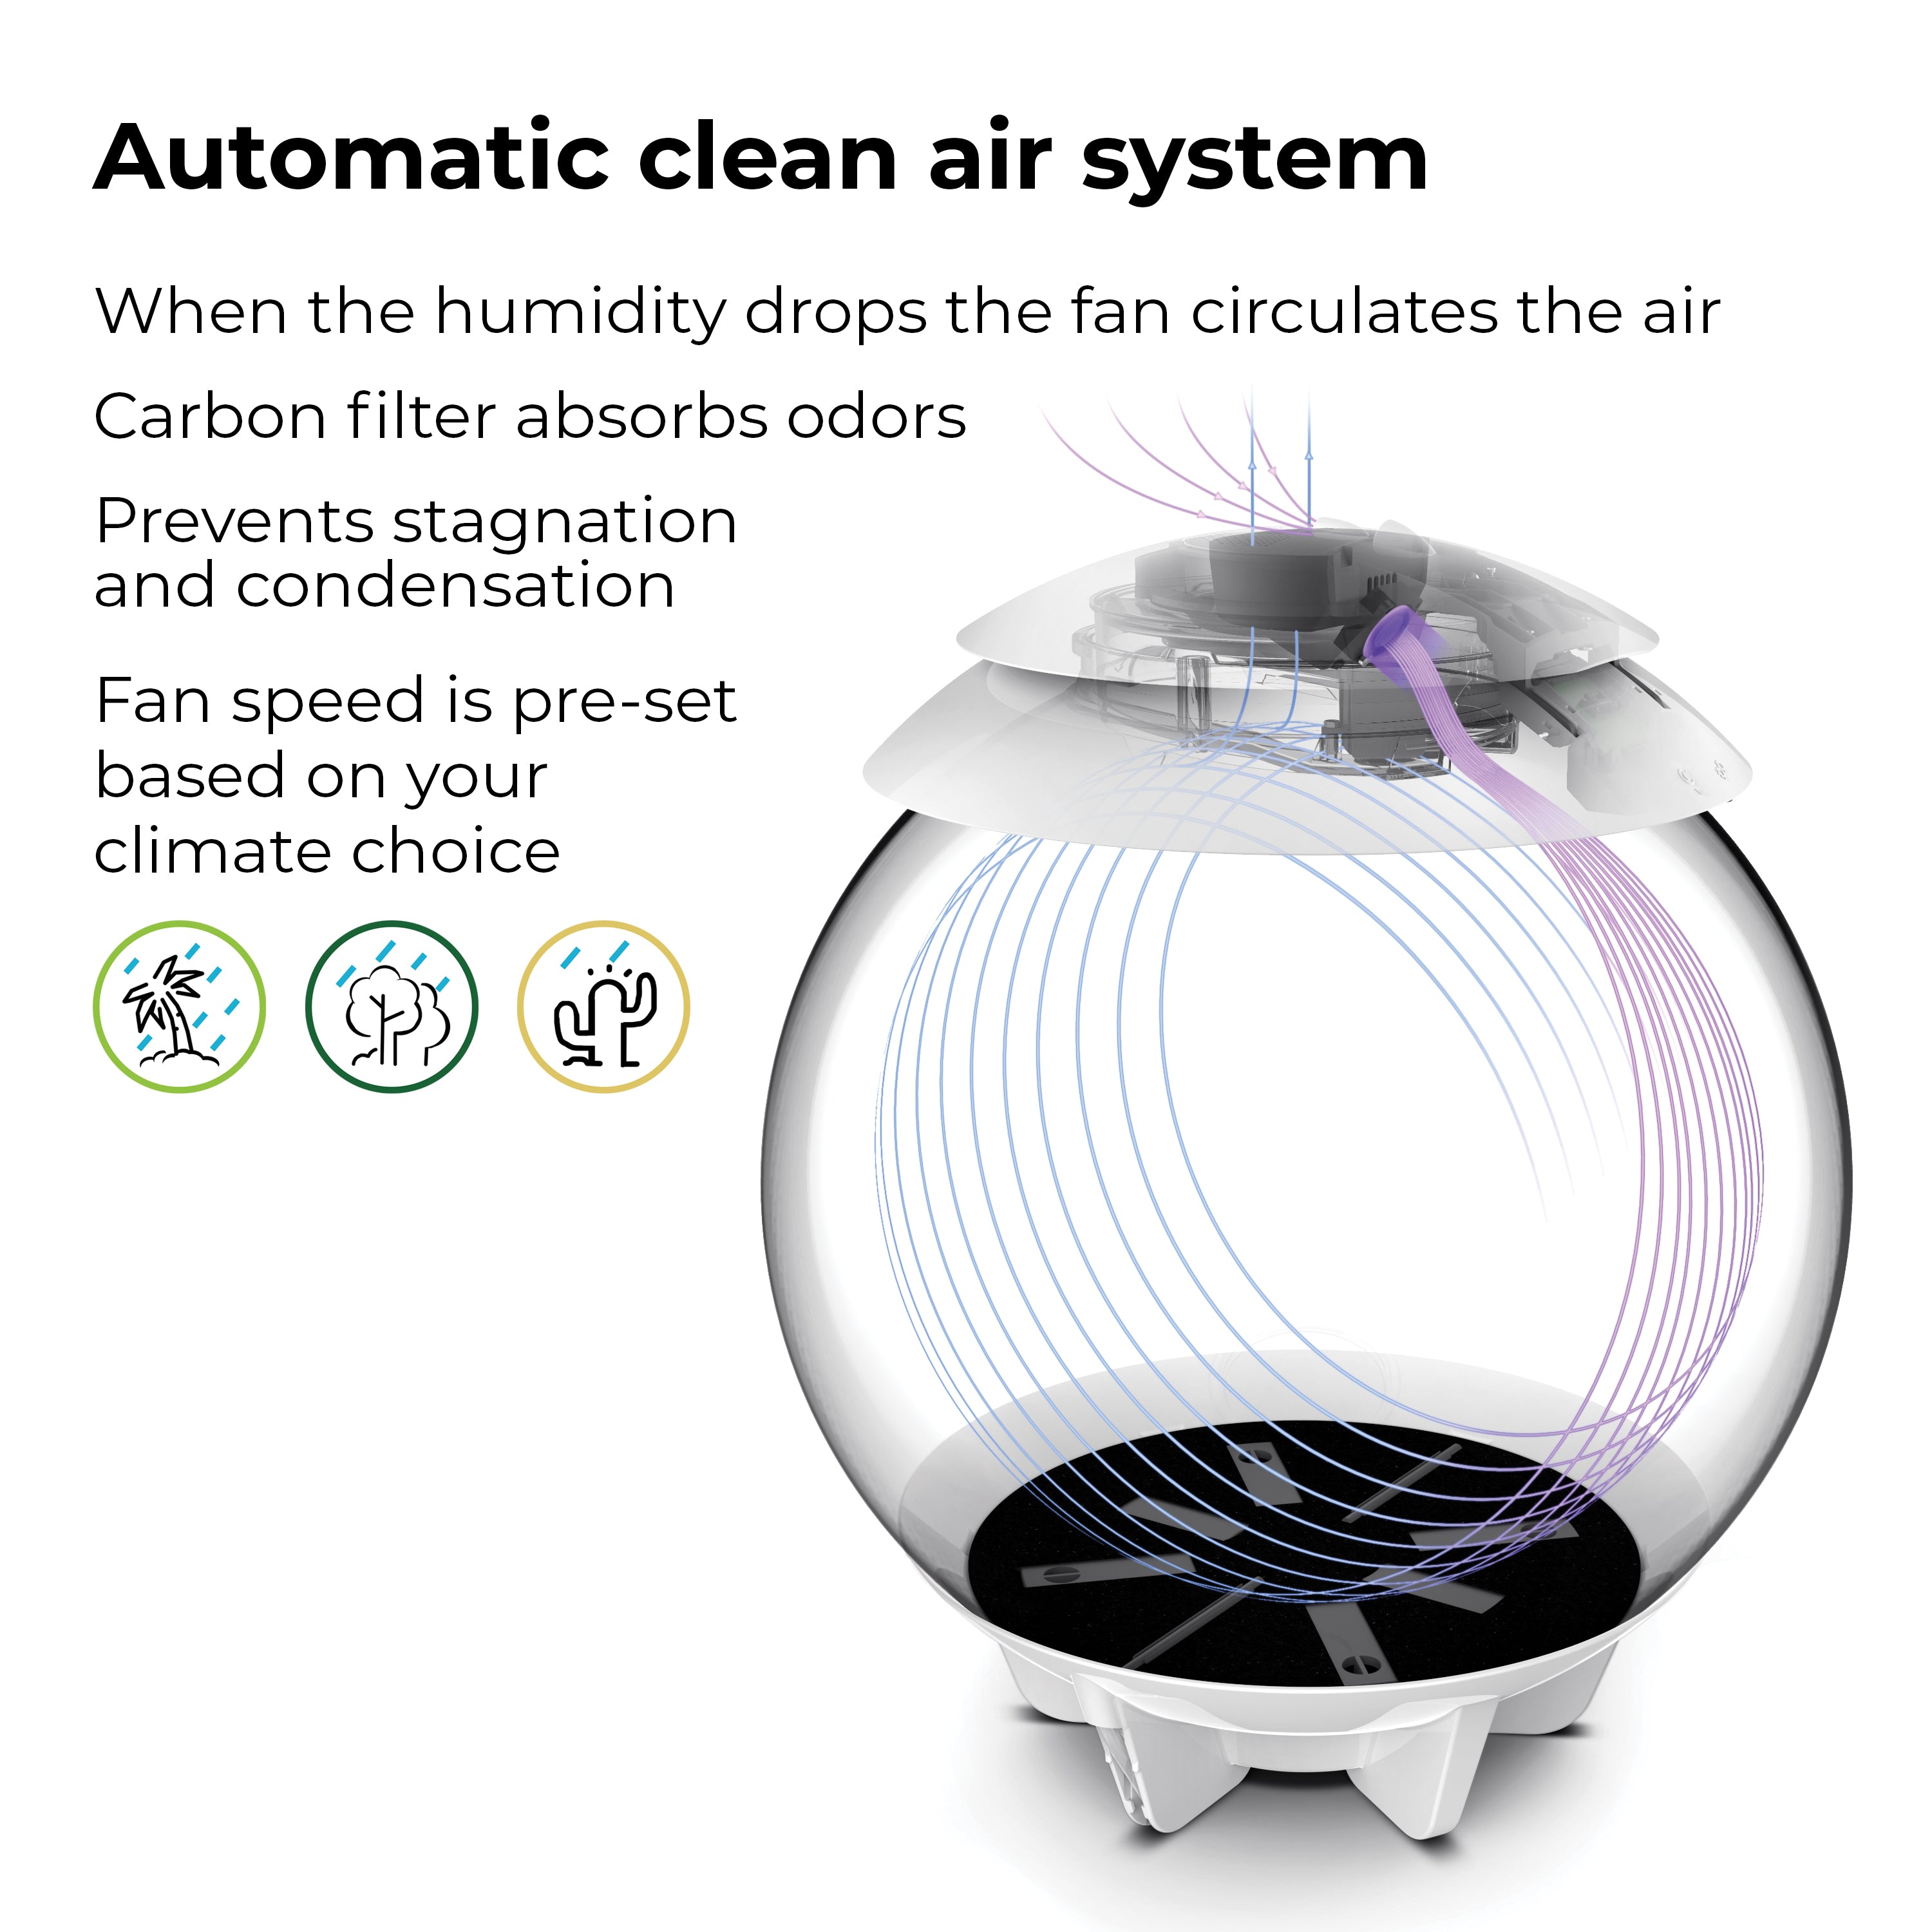 AIR 30 Automatic clean air system